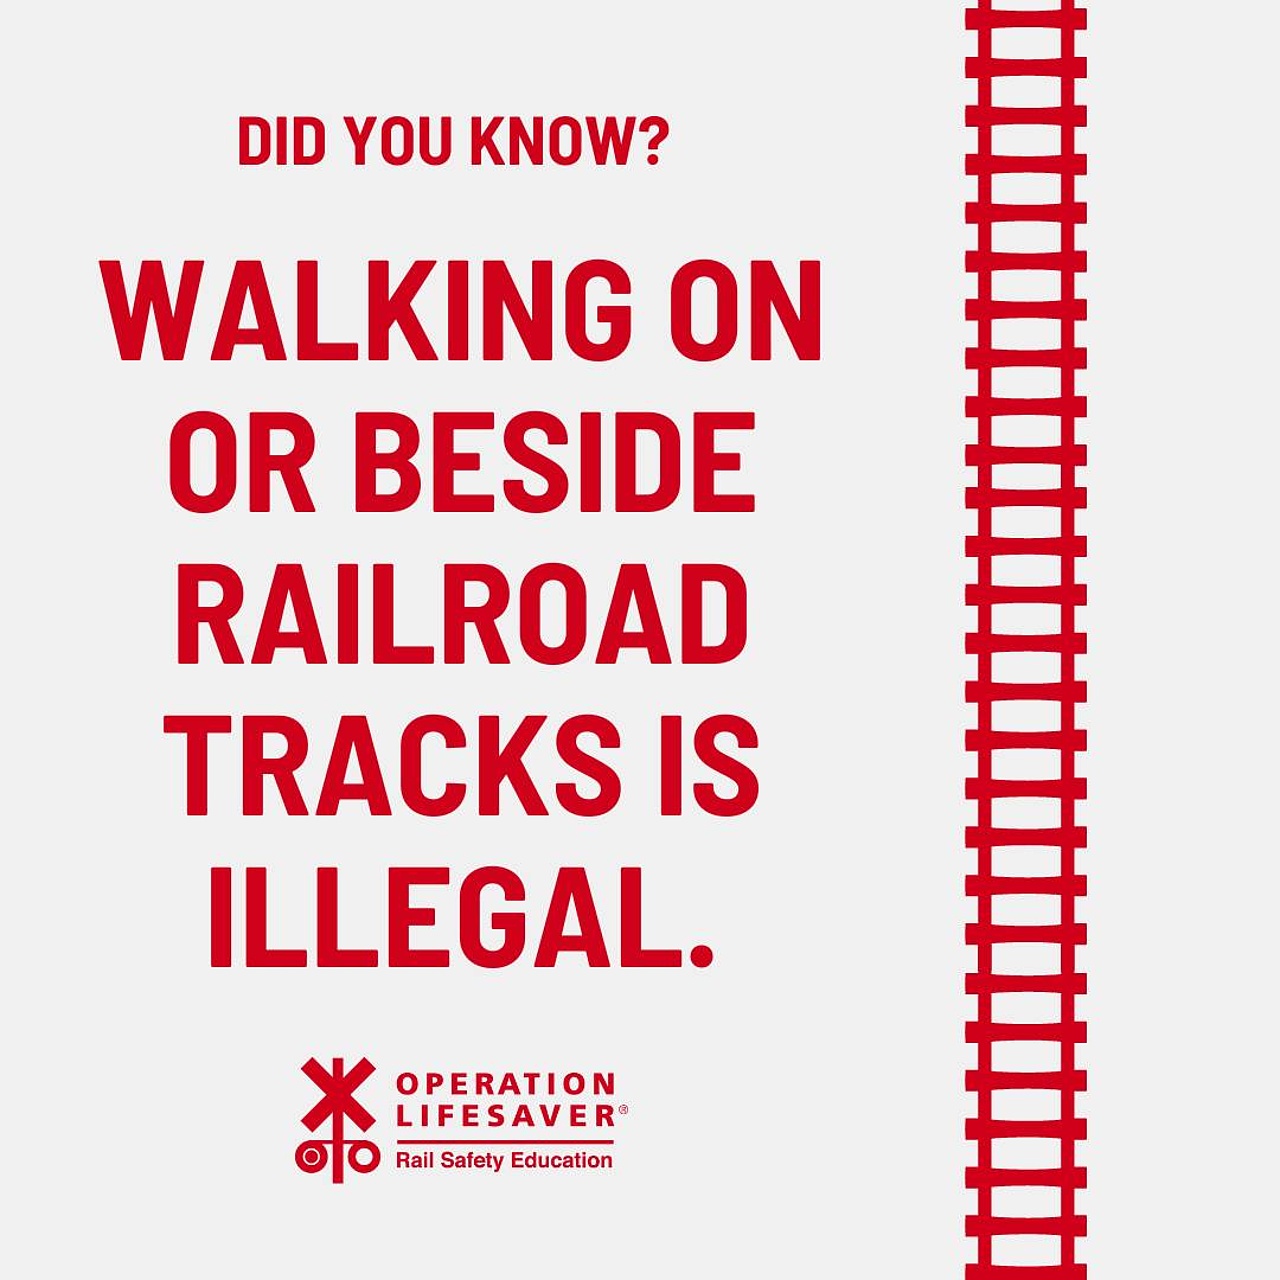 Foto: Did you know? Walking on or beside railroad tracks is illegal. Czy wiesz, że...? Chodzenie po torach kolejowych lub obok nich jest nielegalne 